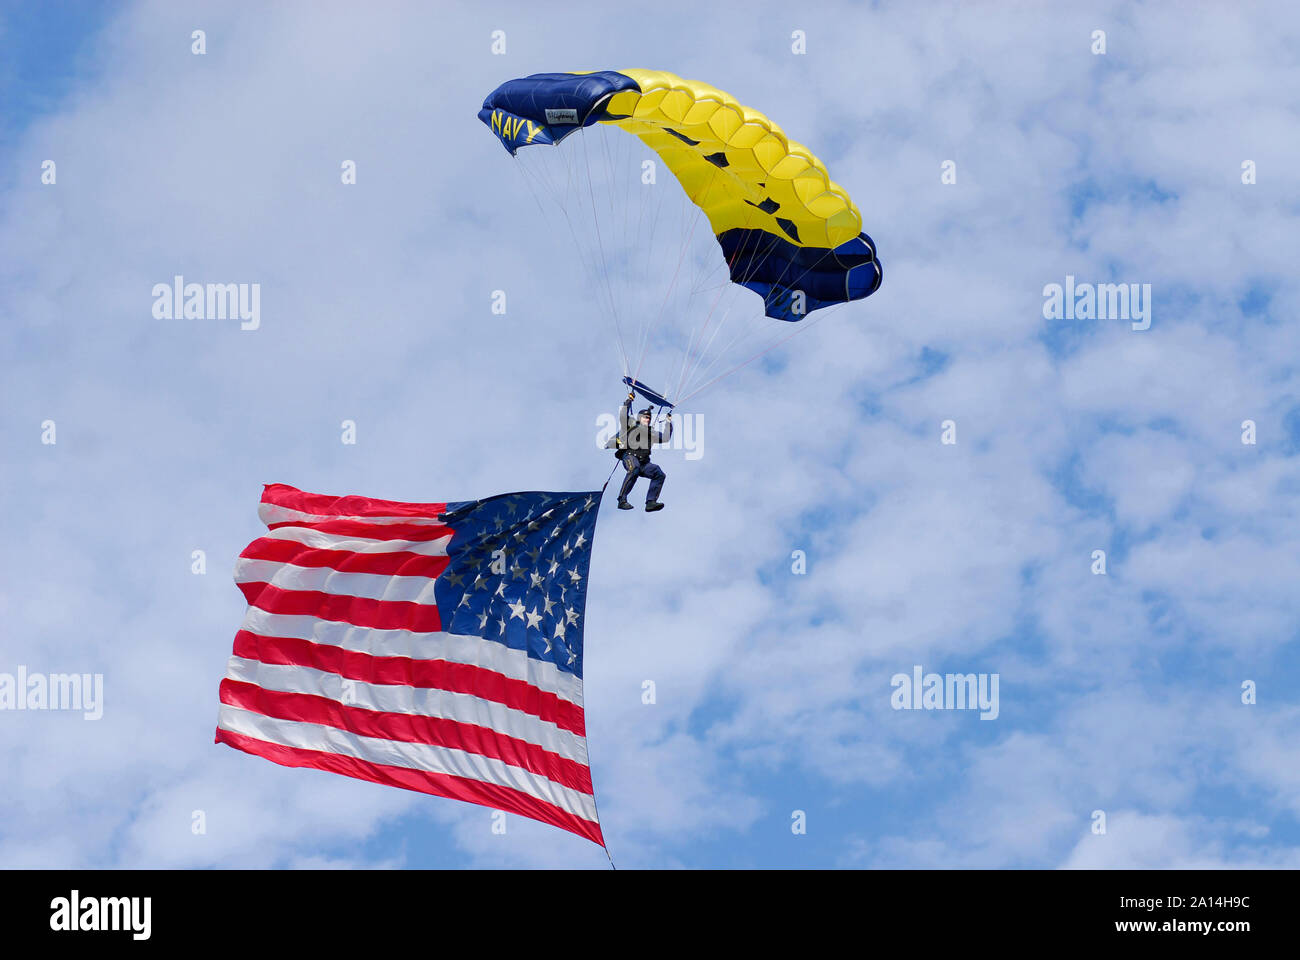 Mitglied der U.S. Navy Fallschirm demonstration Team, den Sprung Frösche, kommt für eine Landung. Stockfoto